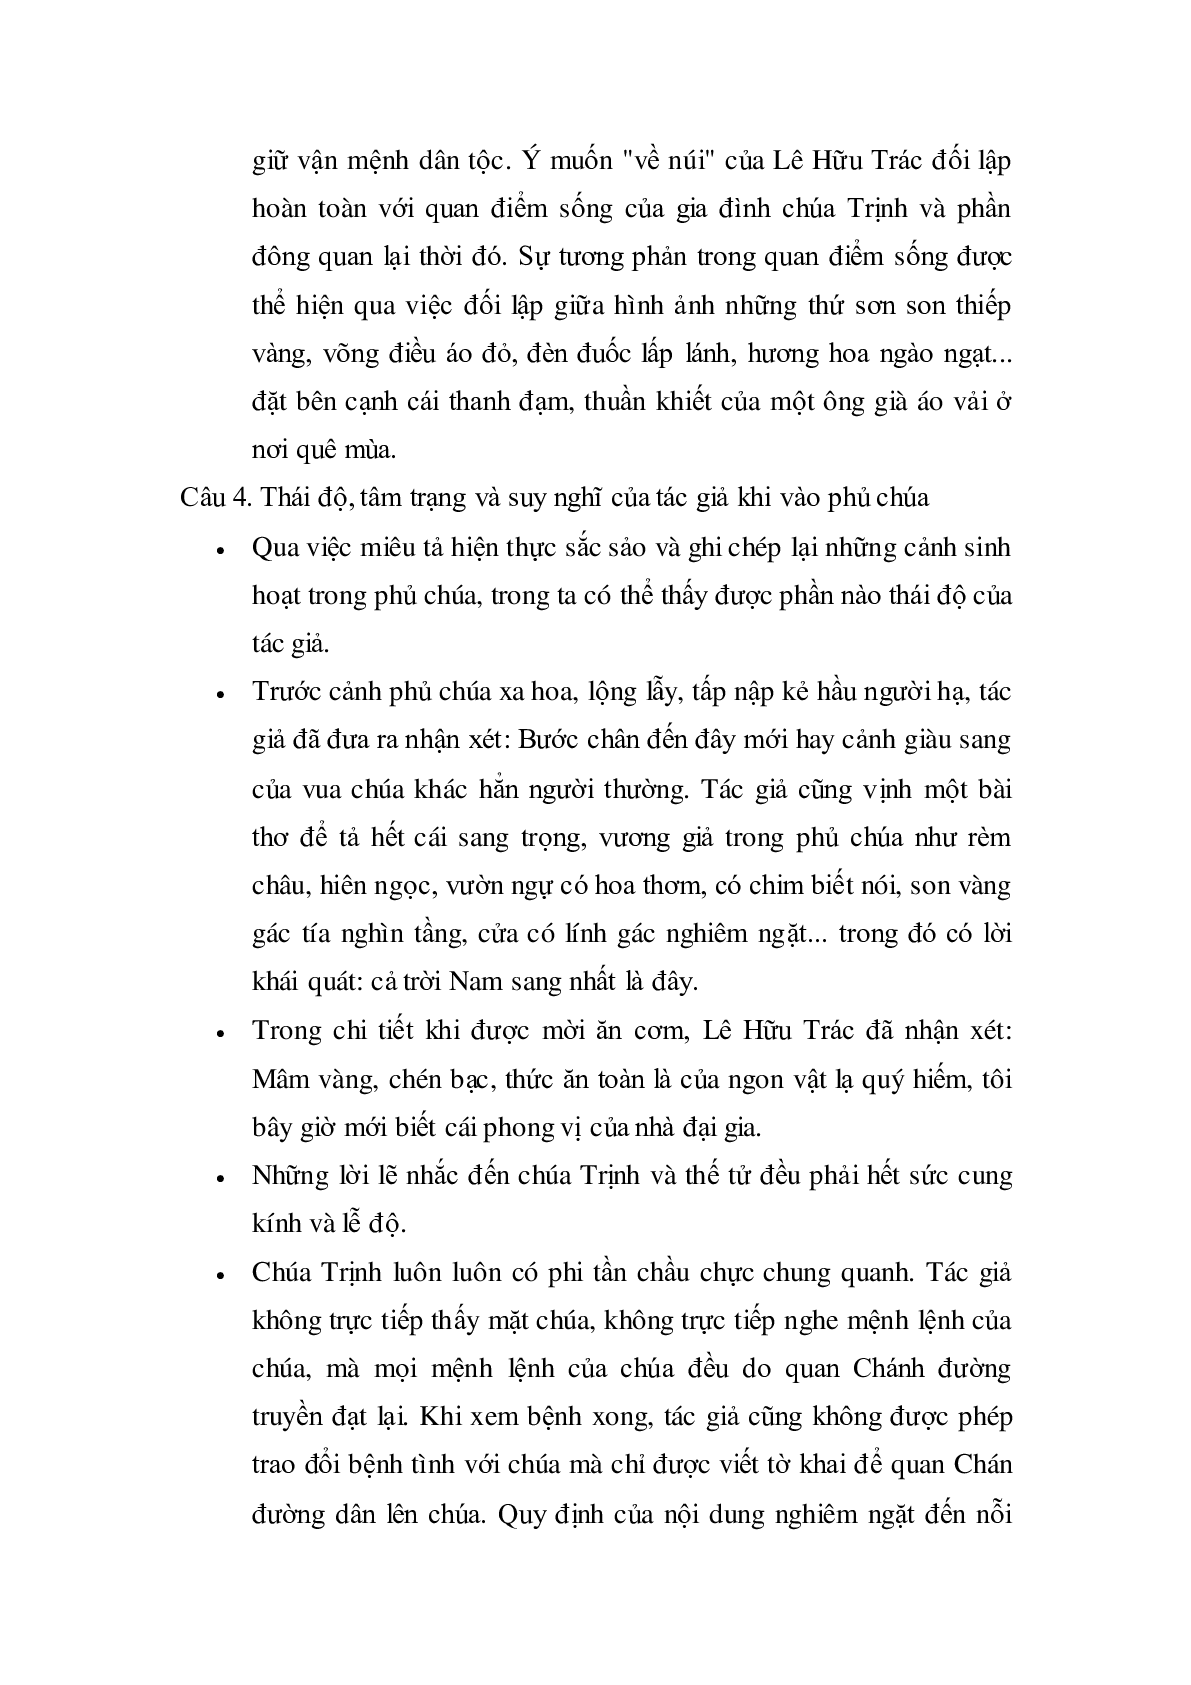 Soạn bài Vào phủ chúa Trịnh của Lê Hữu Trác - ngắn nhất Soạn văn 11 (trang 4)